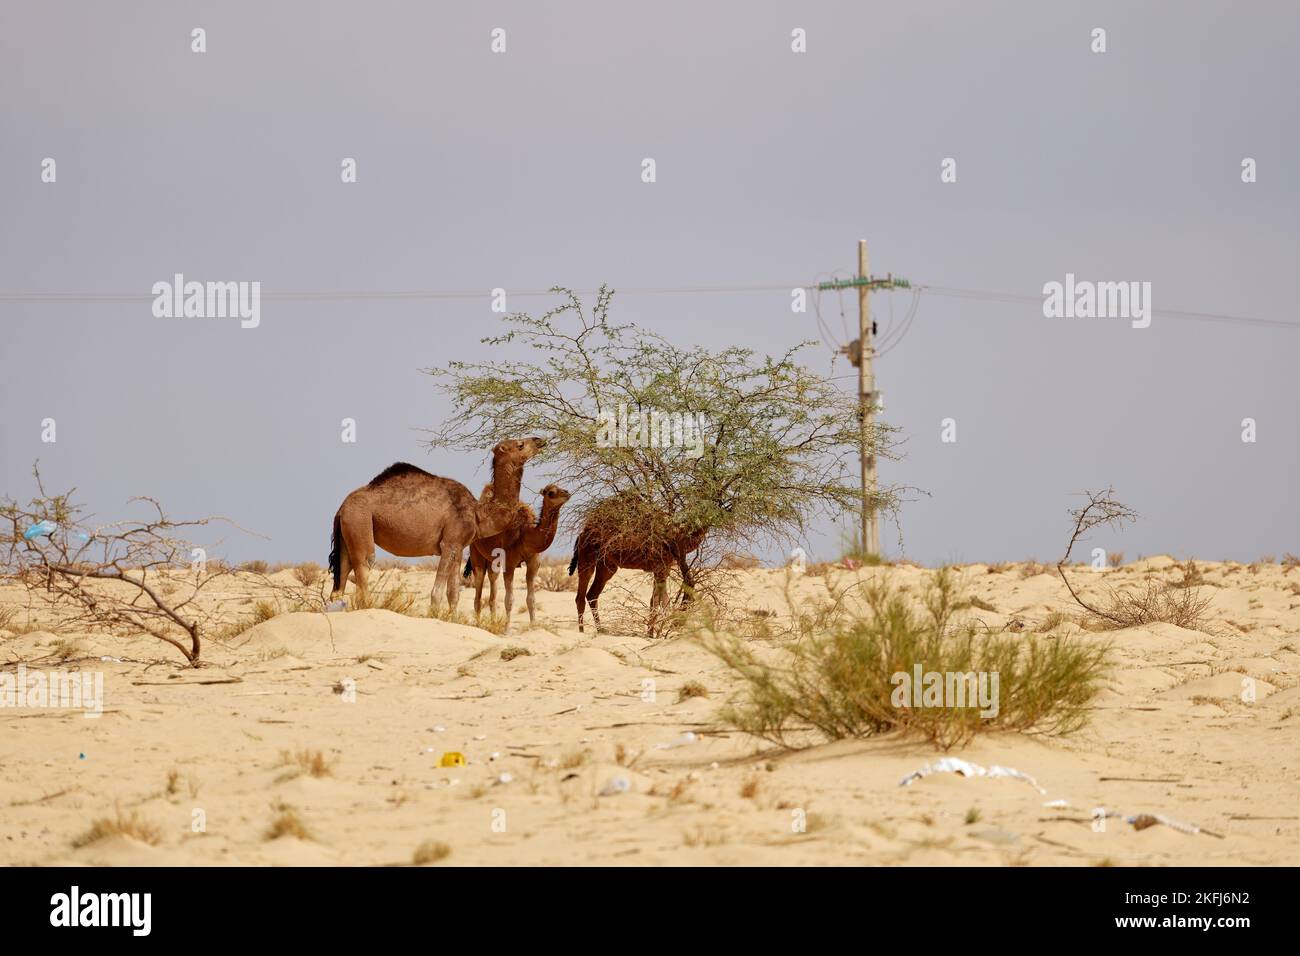 Chameaux dans le désert manger des feuilles de l'arbre. Animaux sauvages dans leur habitat naturel. Paysages sauvages et arides. Voyages et tourisme Banque D'Images